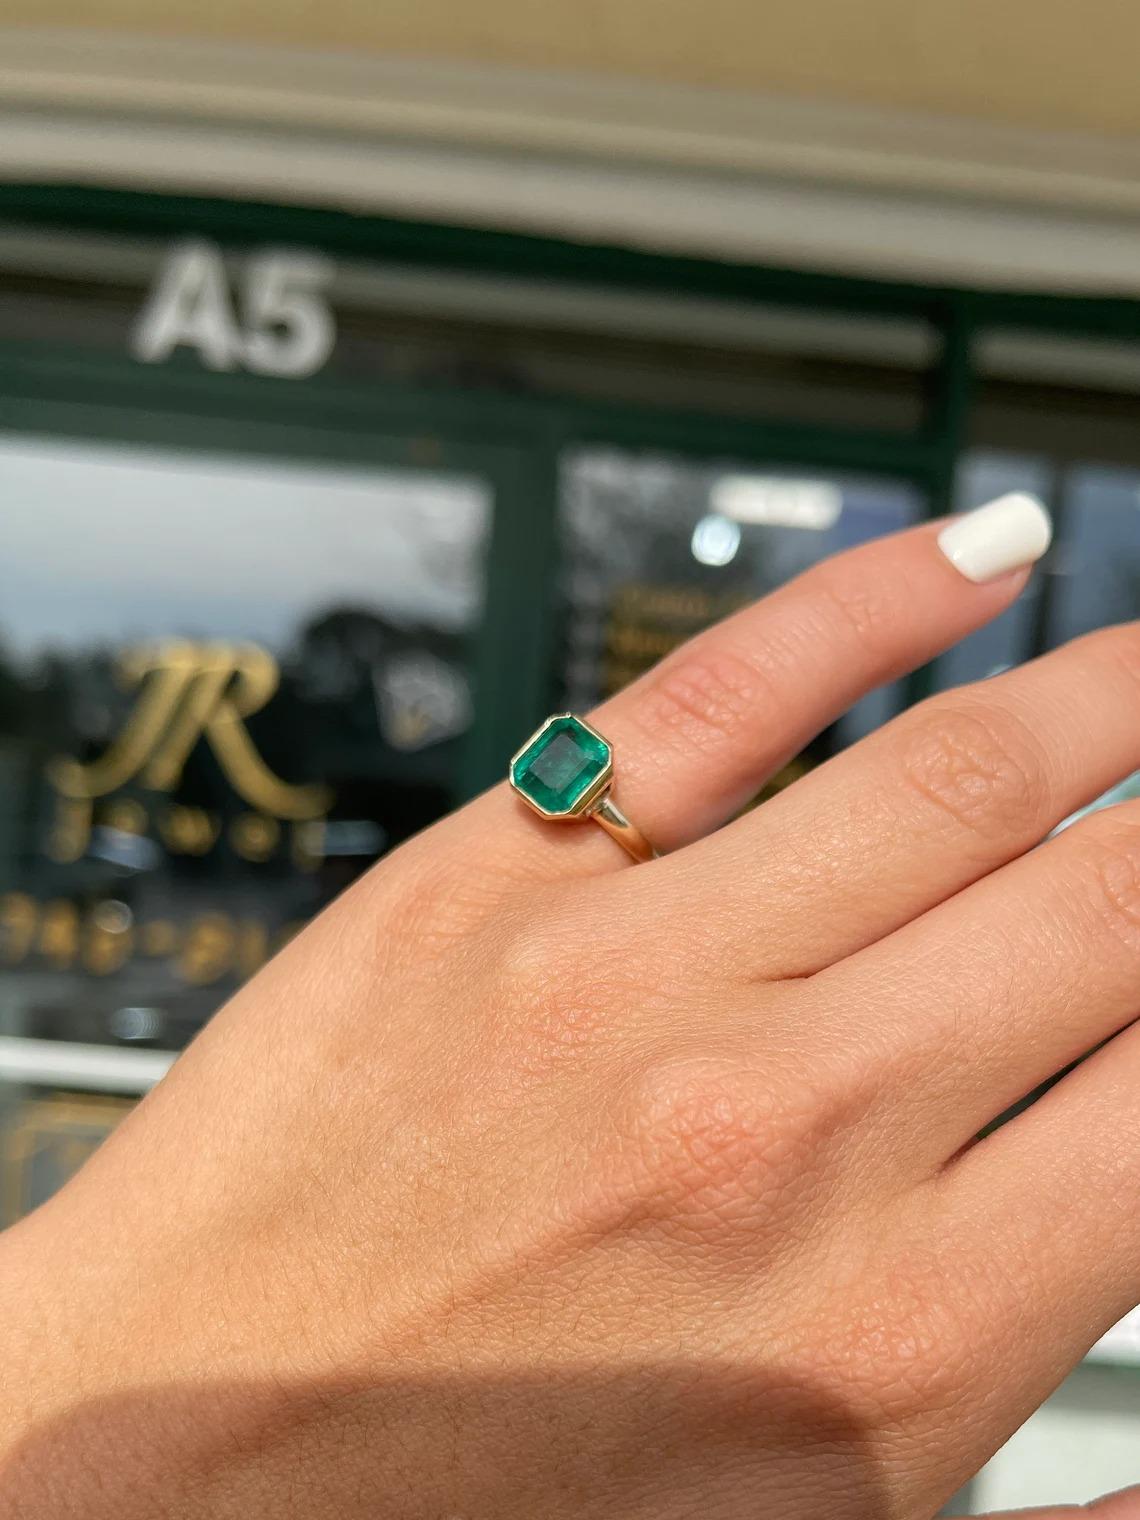 green stone ring for little finger